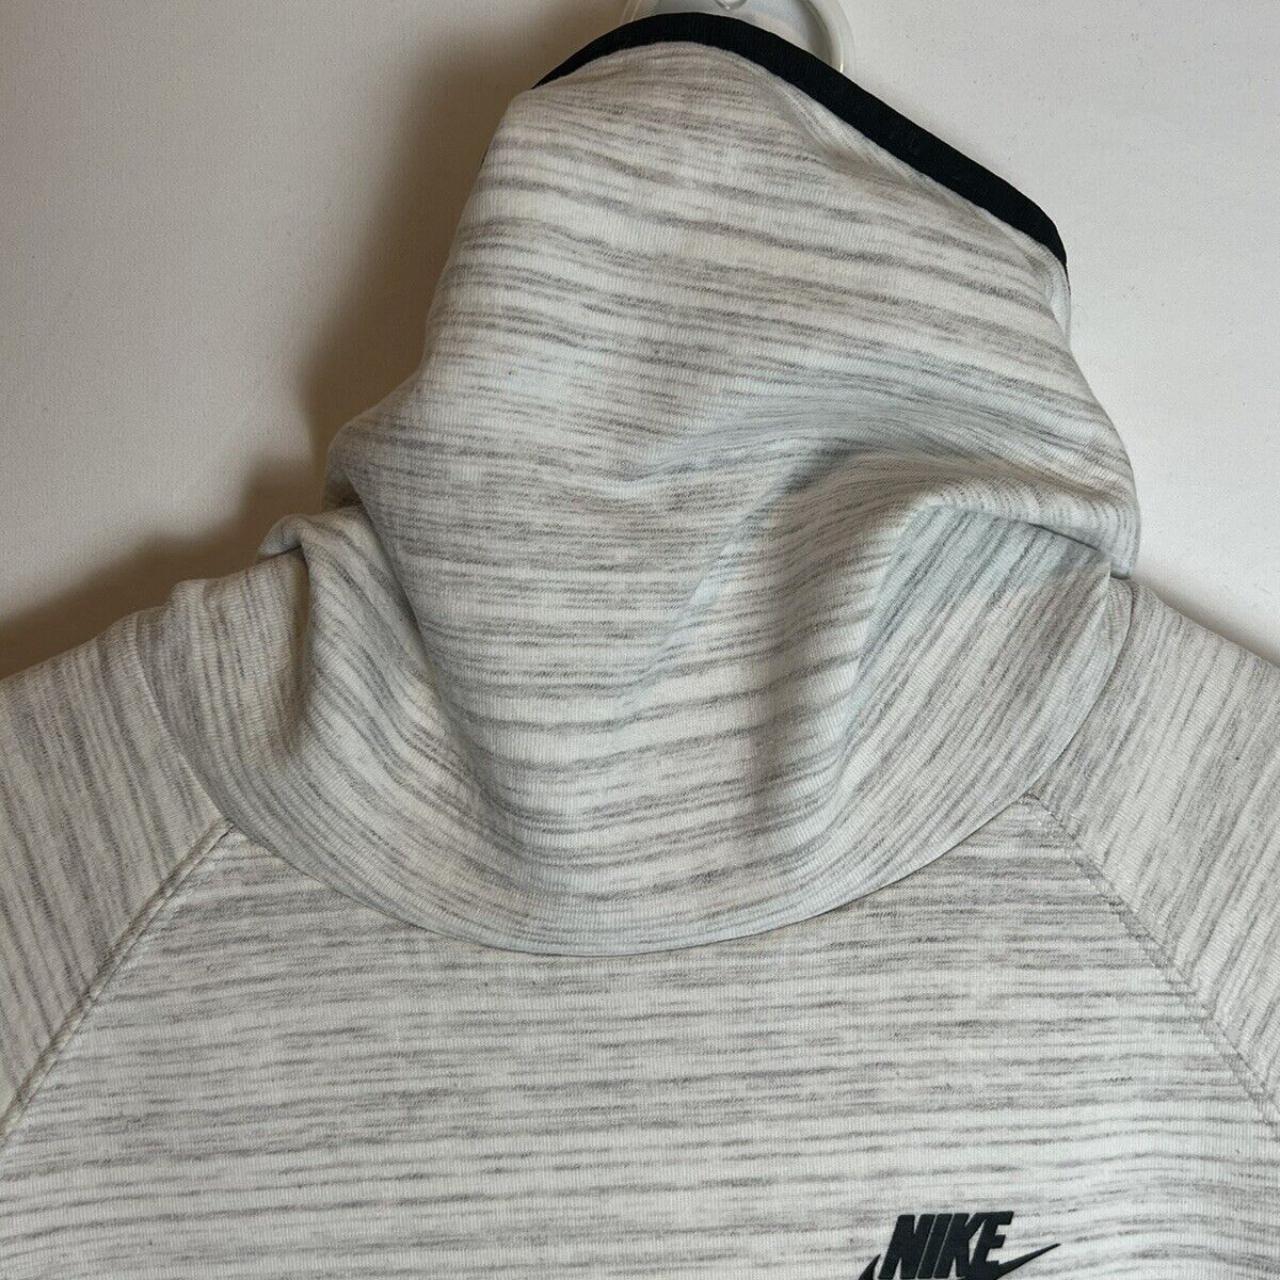 Nike Tech Fleece Tunnel Cream Women’s Sweatshirt... - Depop